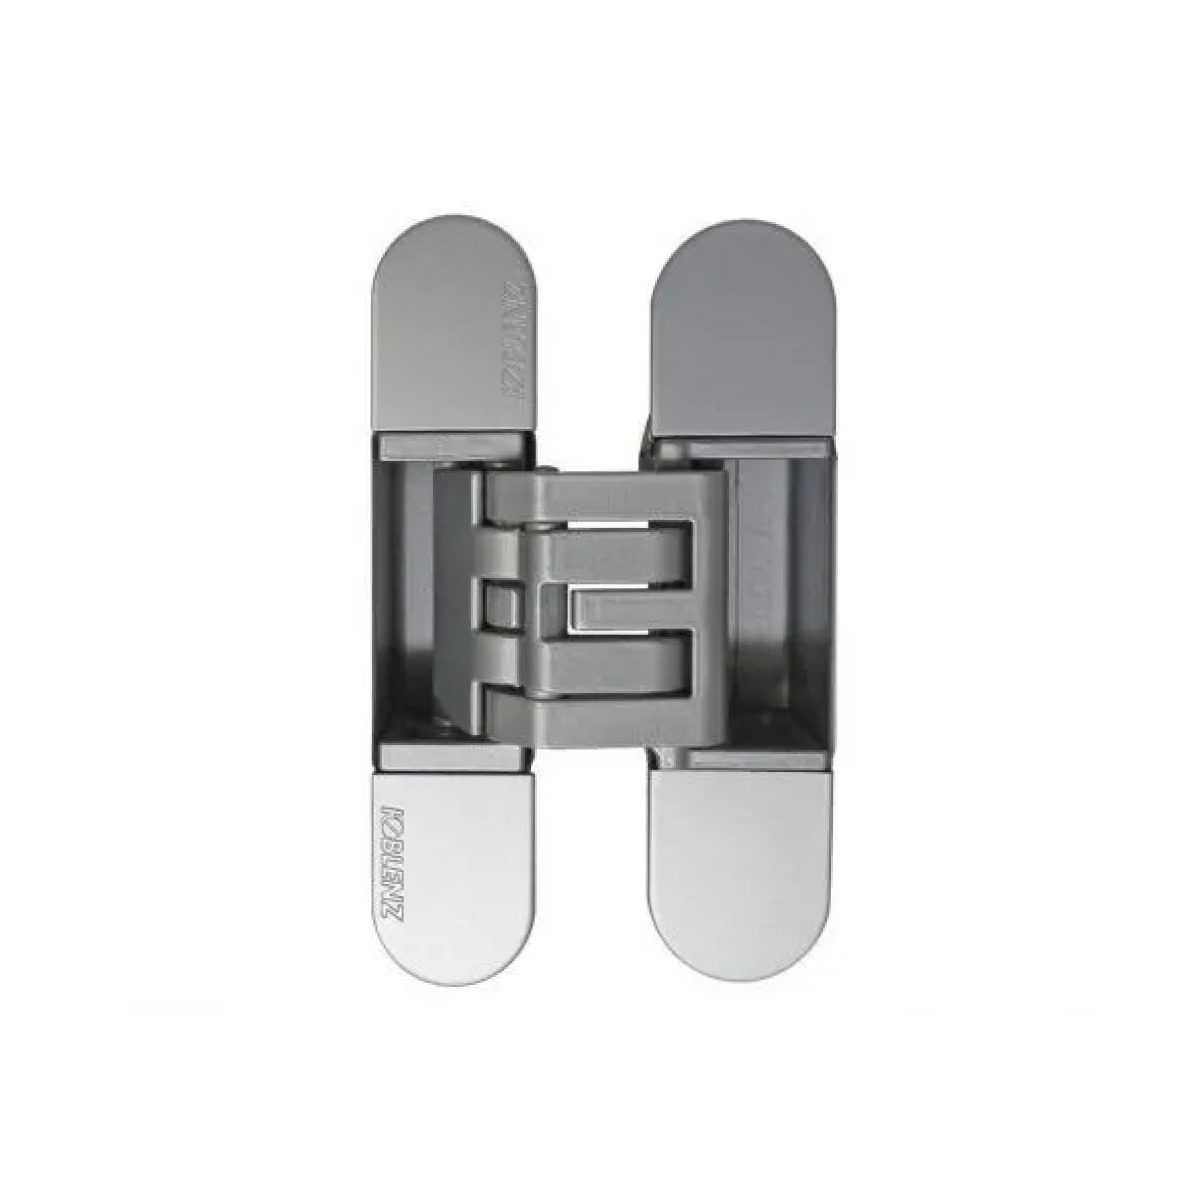 Петля скрытая Dream Doors для коробки моноблок KUBICA K6360-38 ( Матовый хром )  - 1 шт